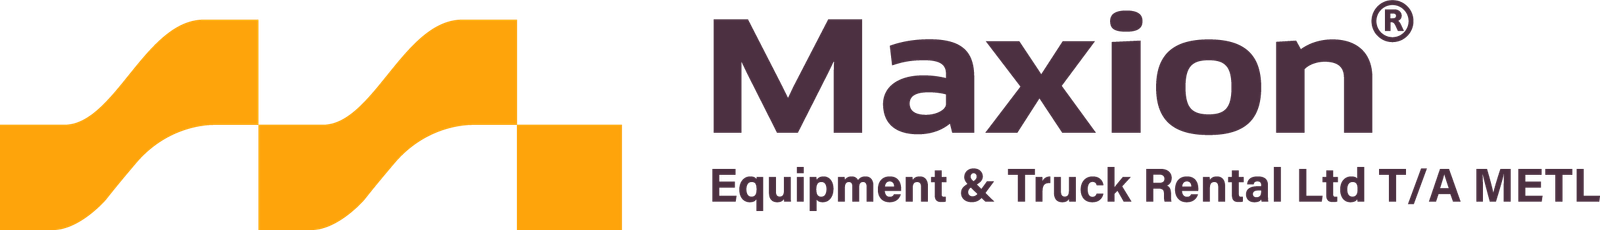 Maxion Equipment & Truck Rental Ltd